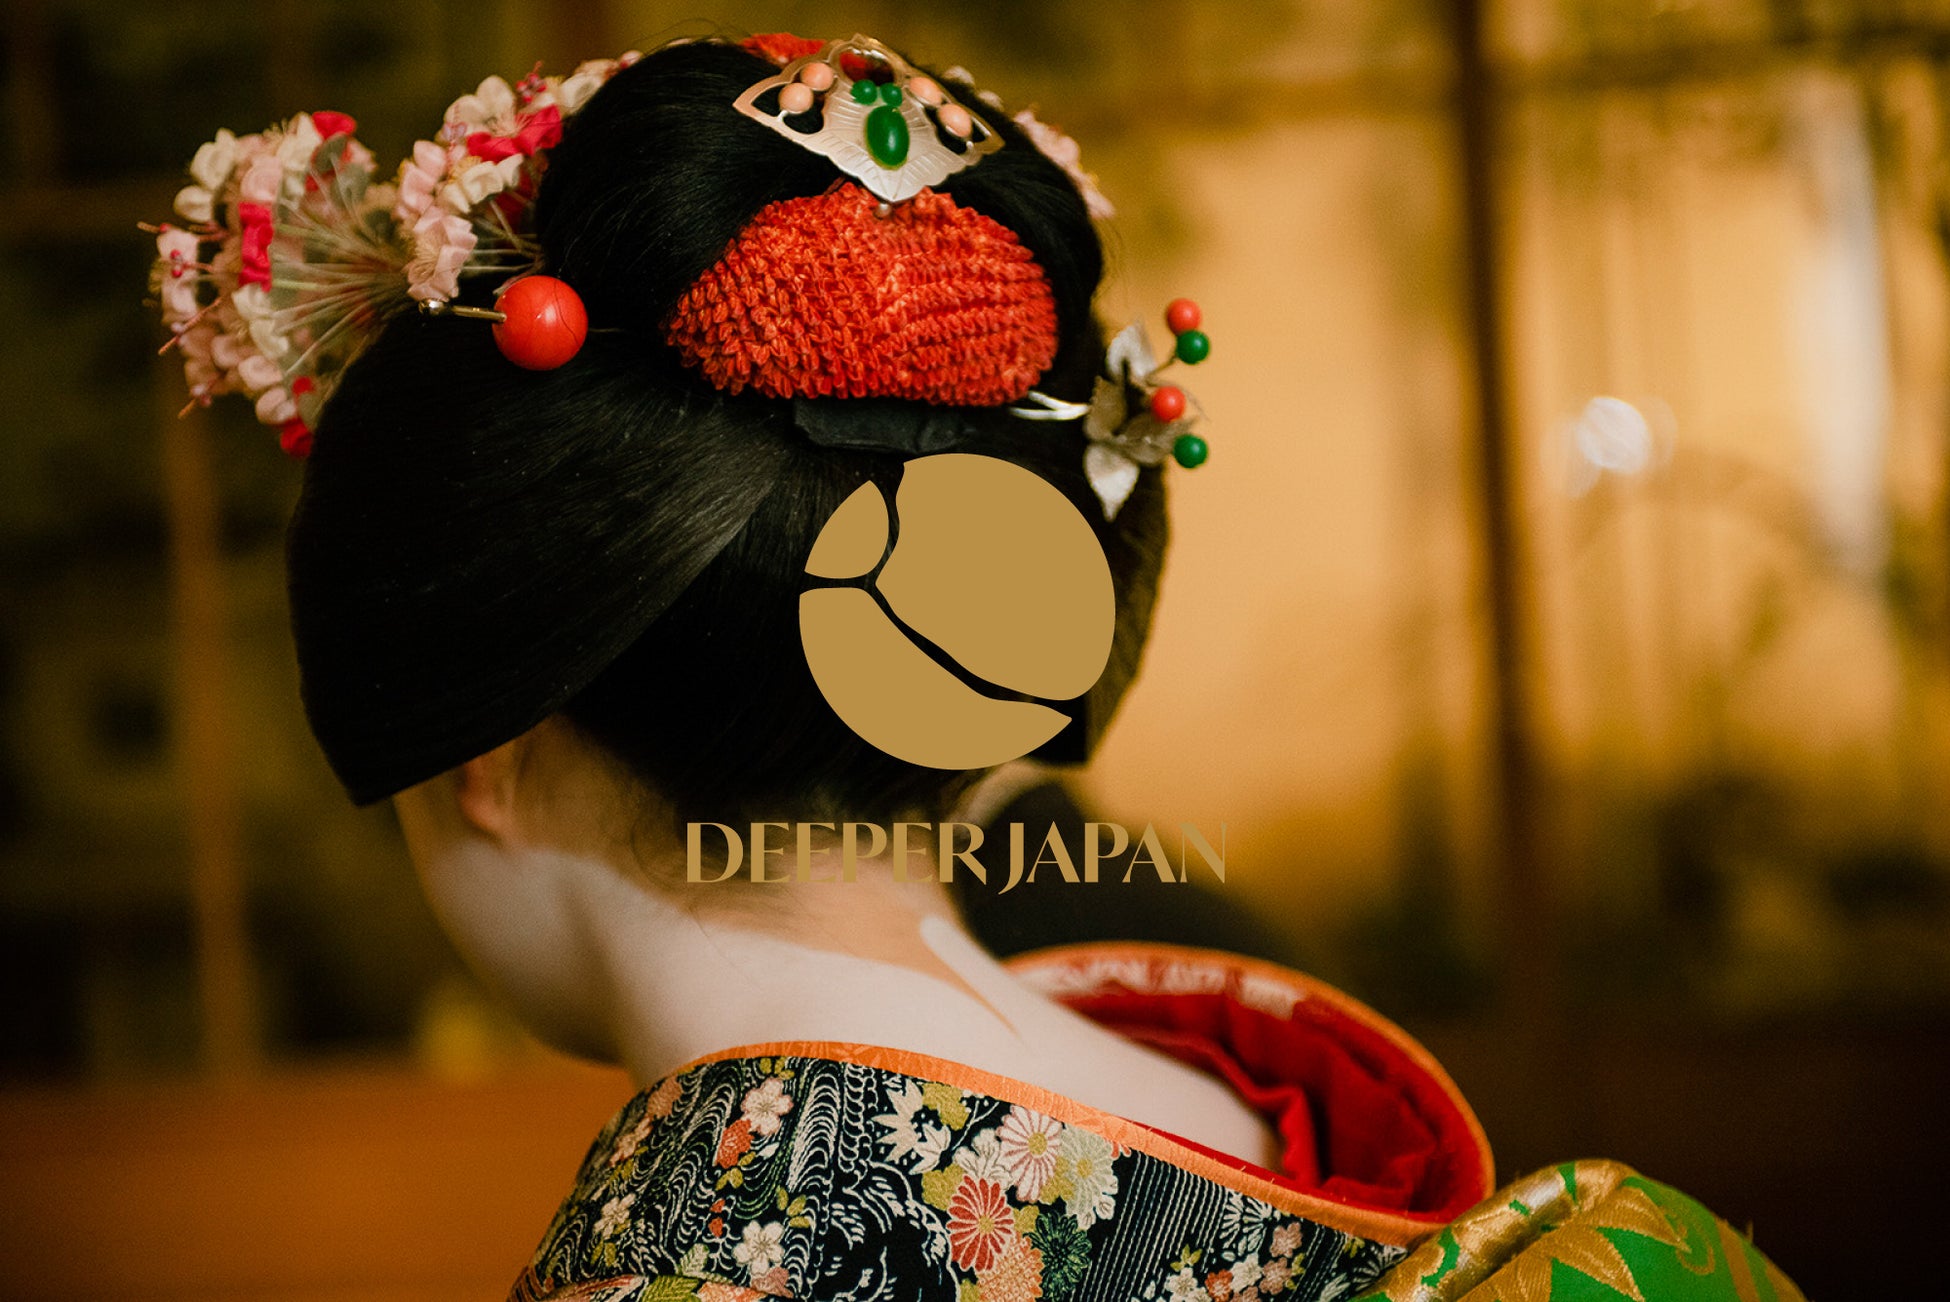 旅行系スタートアップの「Deeper Japan」が、北海道・旭川にて老舗醤油会社と協業し、見学・体験商品をリリース。